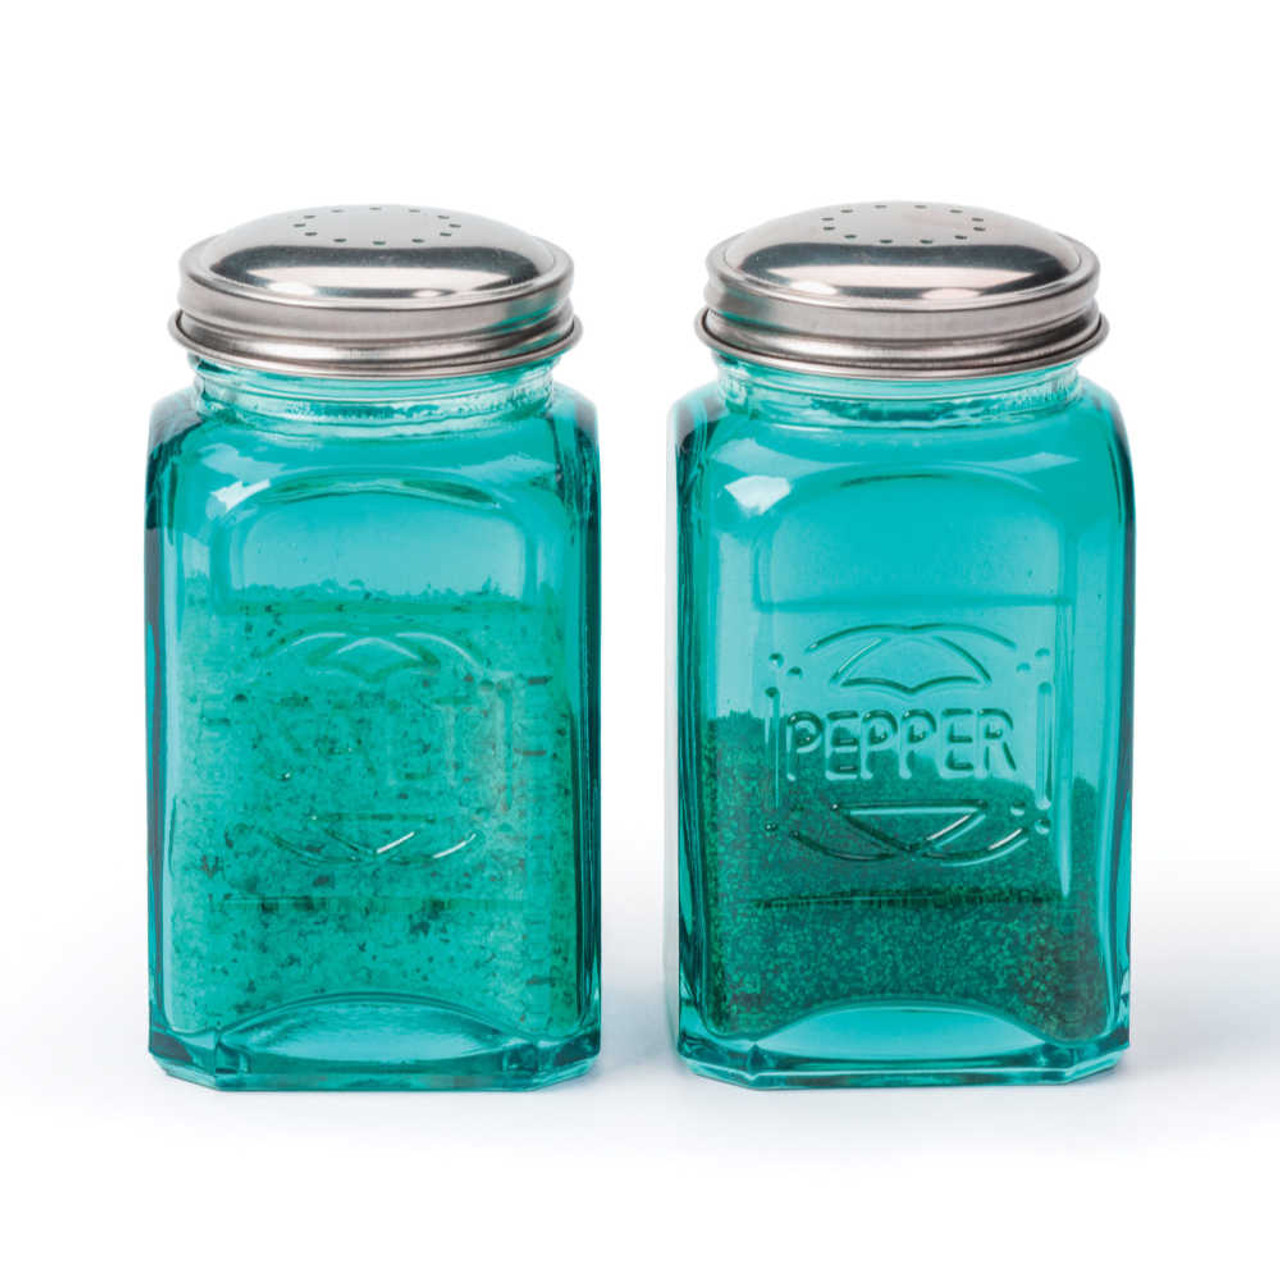 Salt Shaker w. Pepper Shaker - Royal Garden Turquoise - Herend Experts